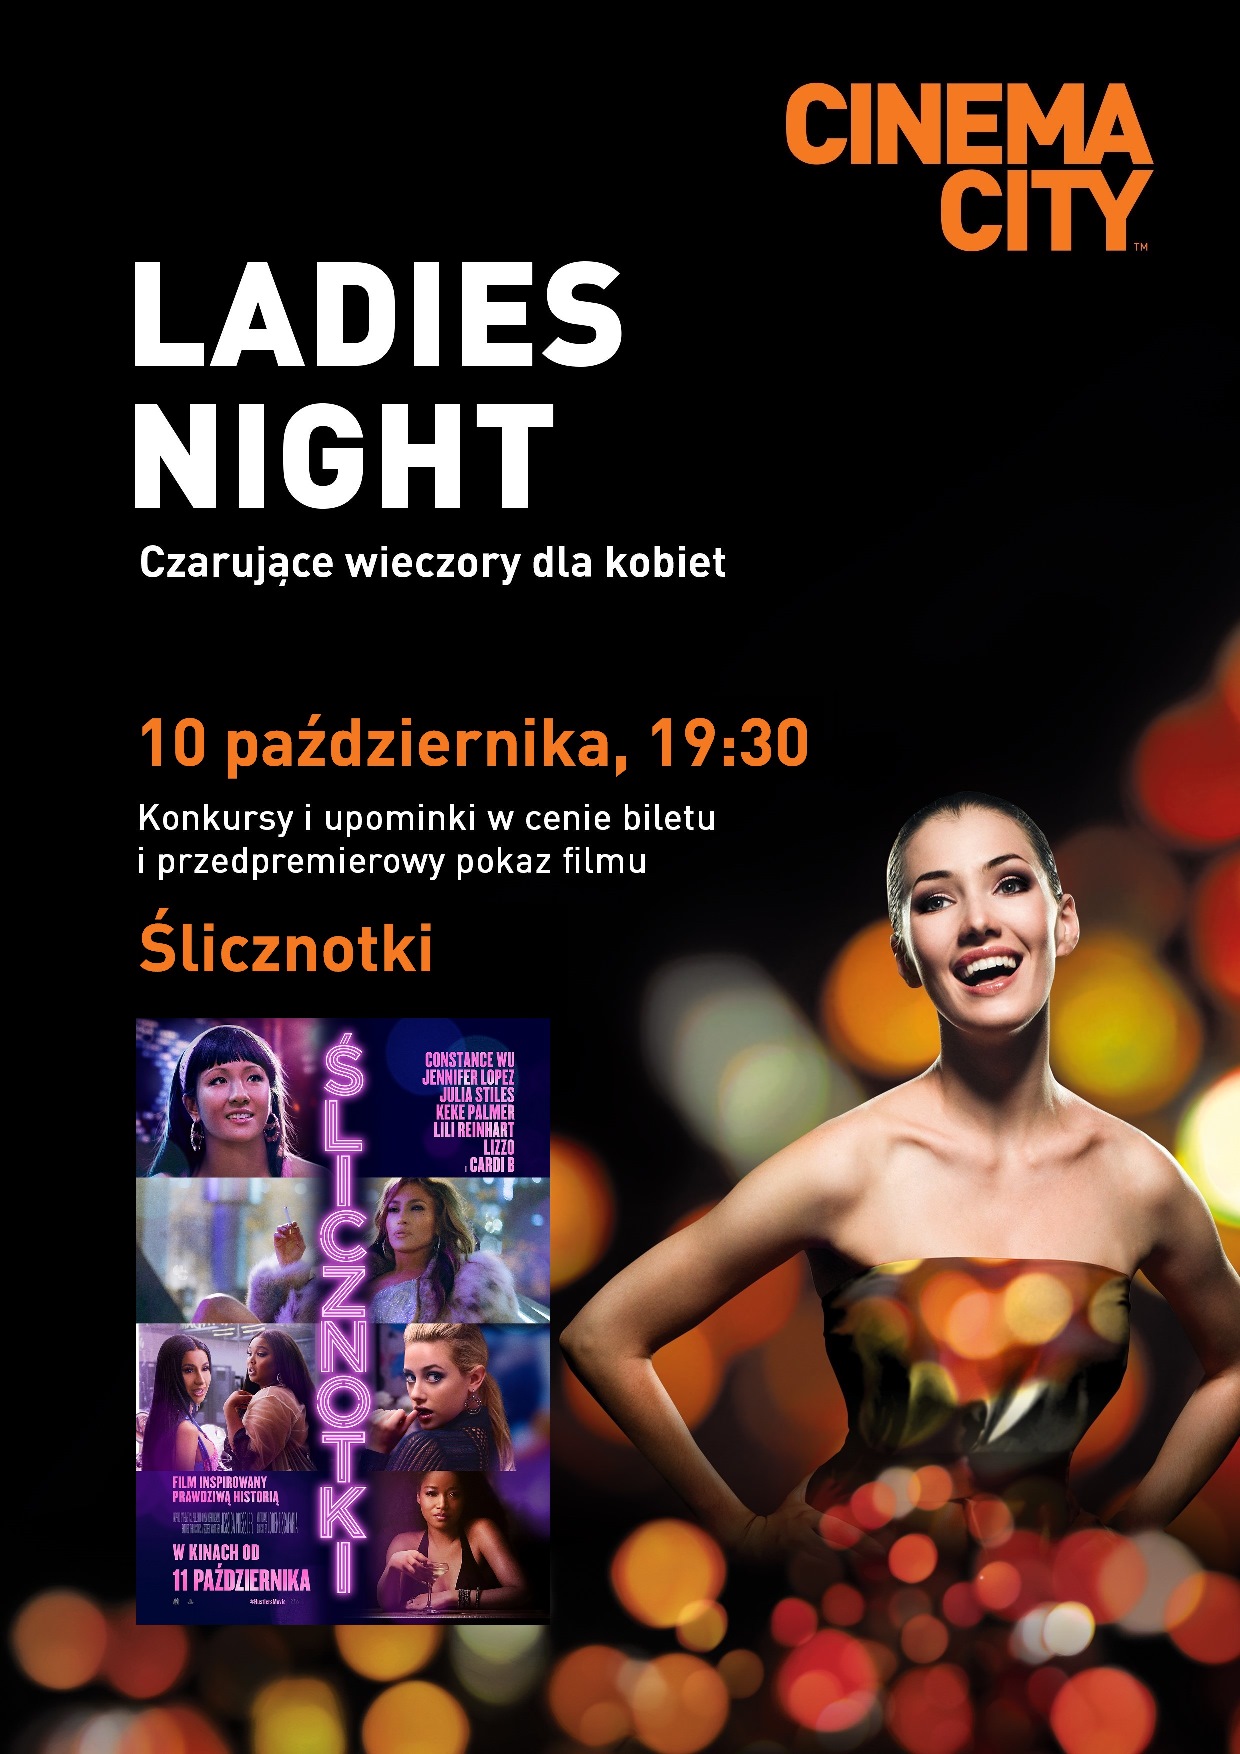 Ślicznotki, Cinema City, Ladies Night, październik